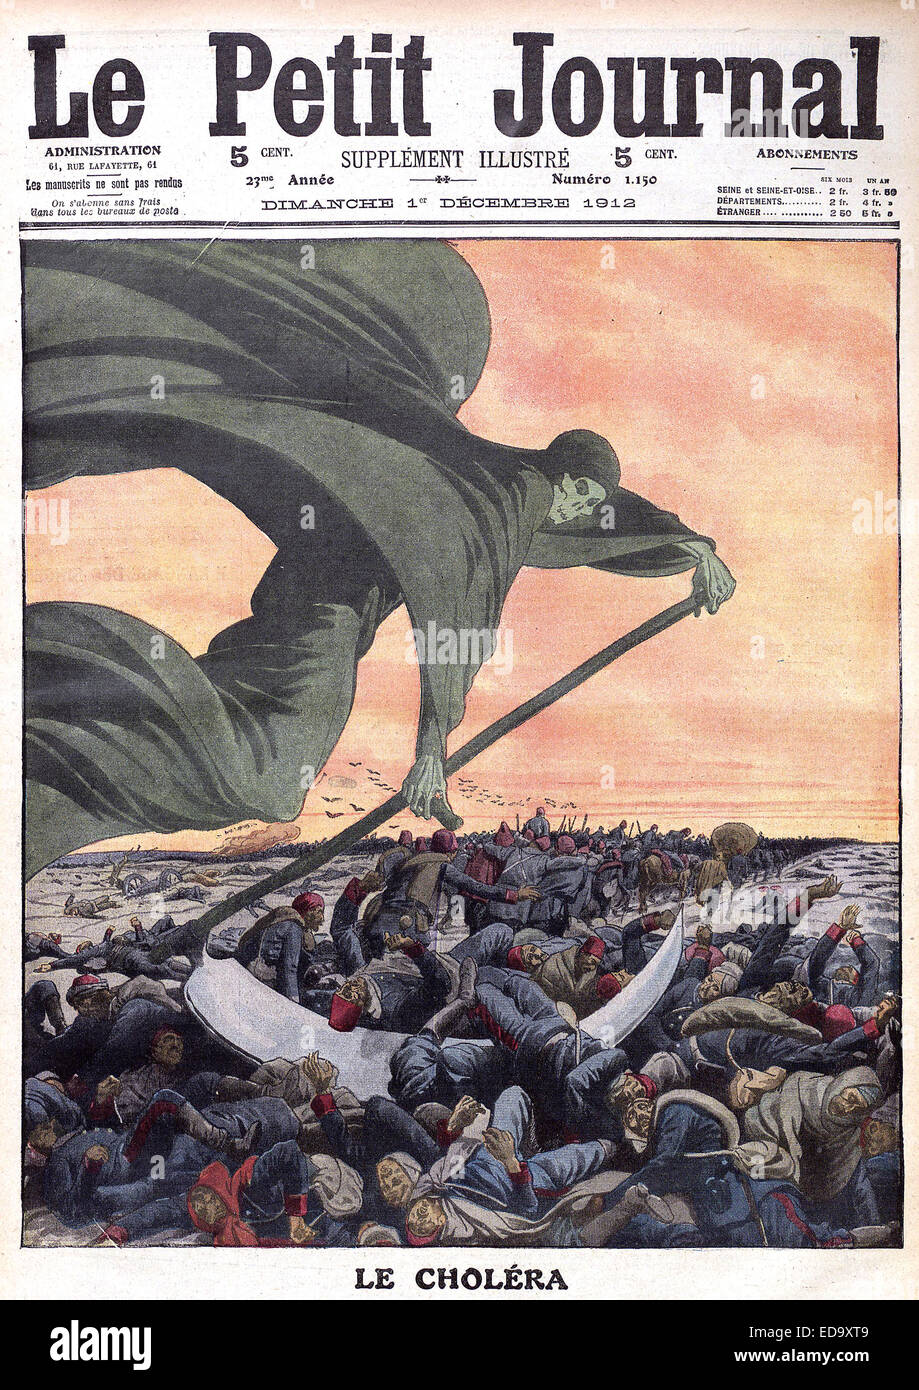 LE PETIT JOURNAL revista semanal francesa el 1 de diciembre de 1912 ilustra la sexta epidemia de cólera que afectó principalmente a Rusia y el Imperio Otomano entre 1899 y 1923 Foto de stock